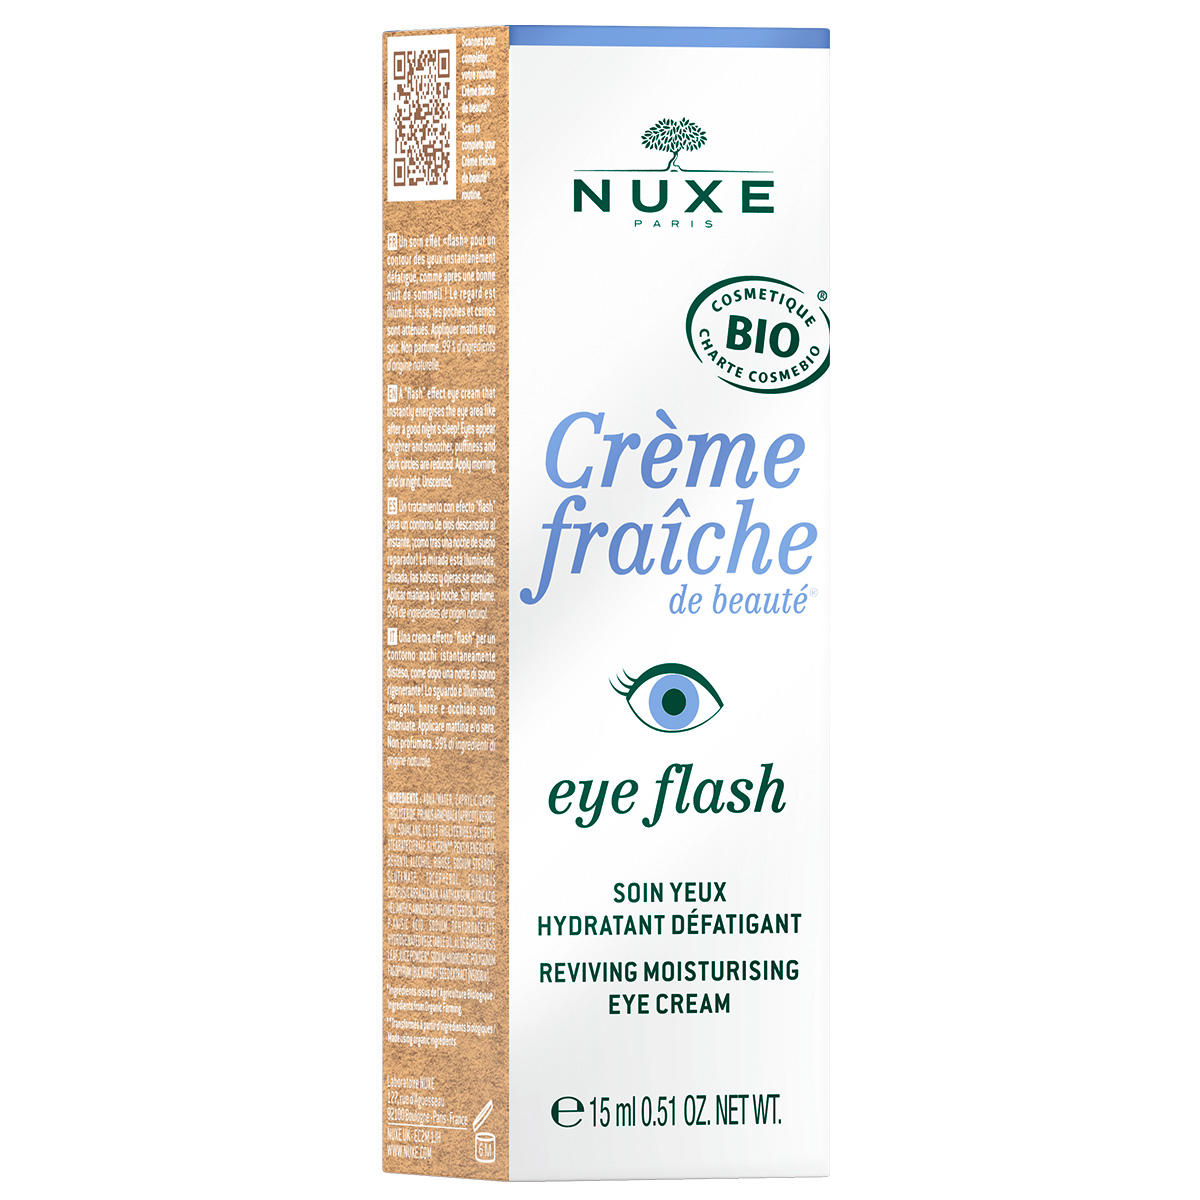 NUXE Crème Fraîche de Beauté Crema de ojos 15 ml - 2